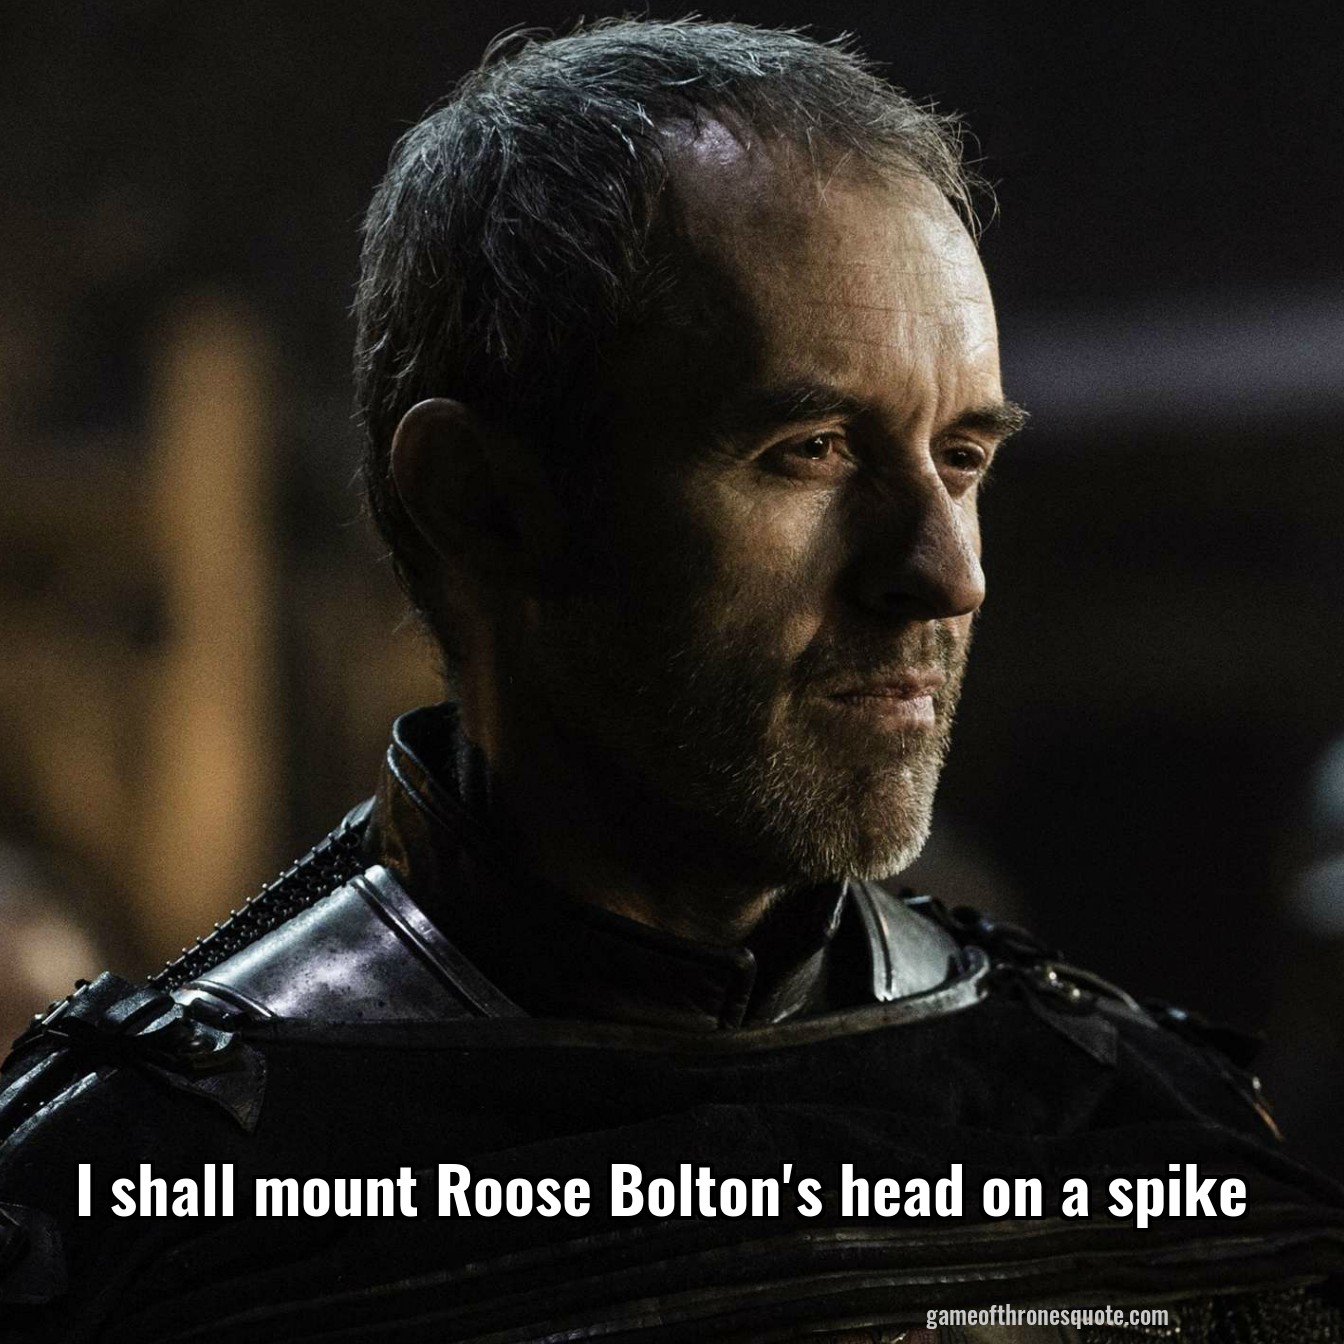 I shall mount Roose Bolton's head on a spike